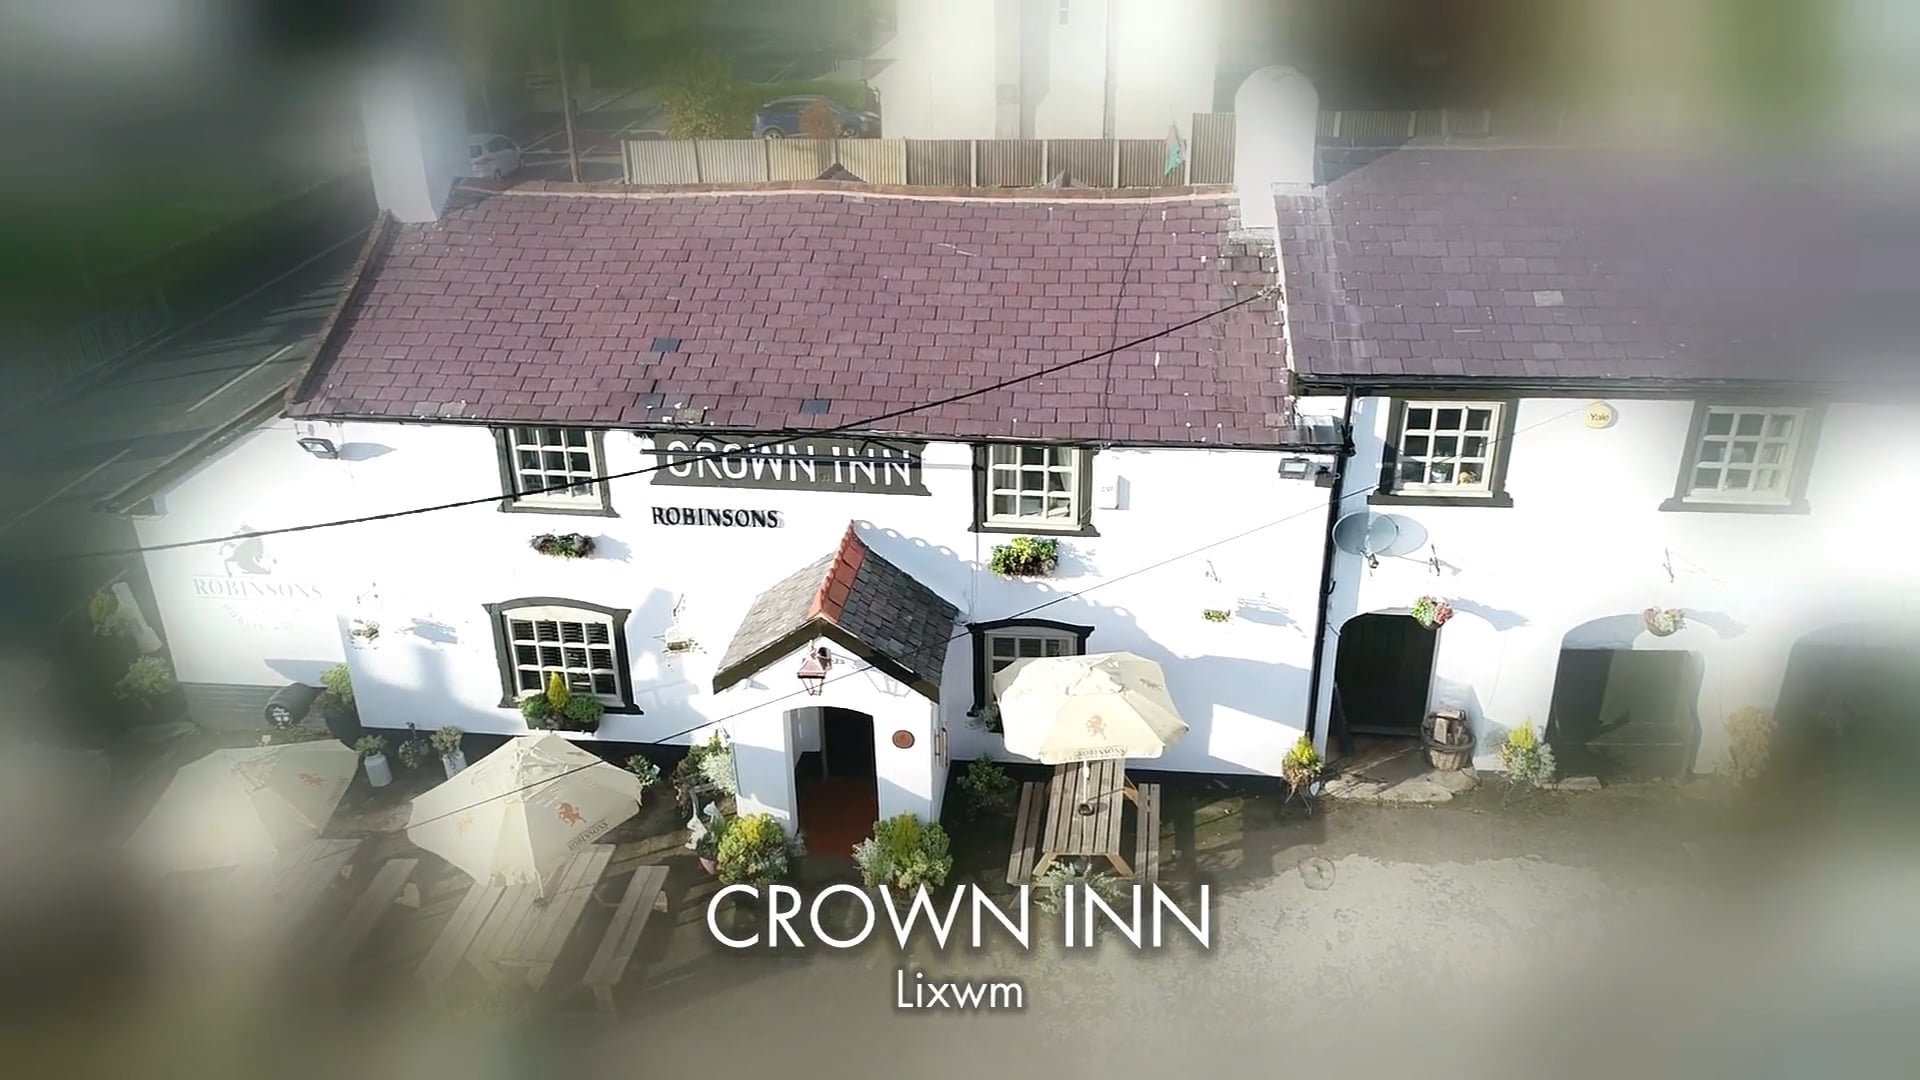 Crown Inn, Lixwm